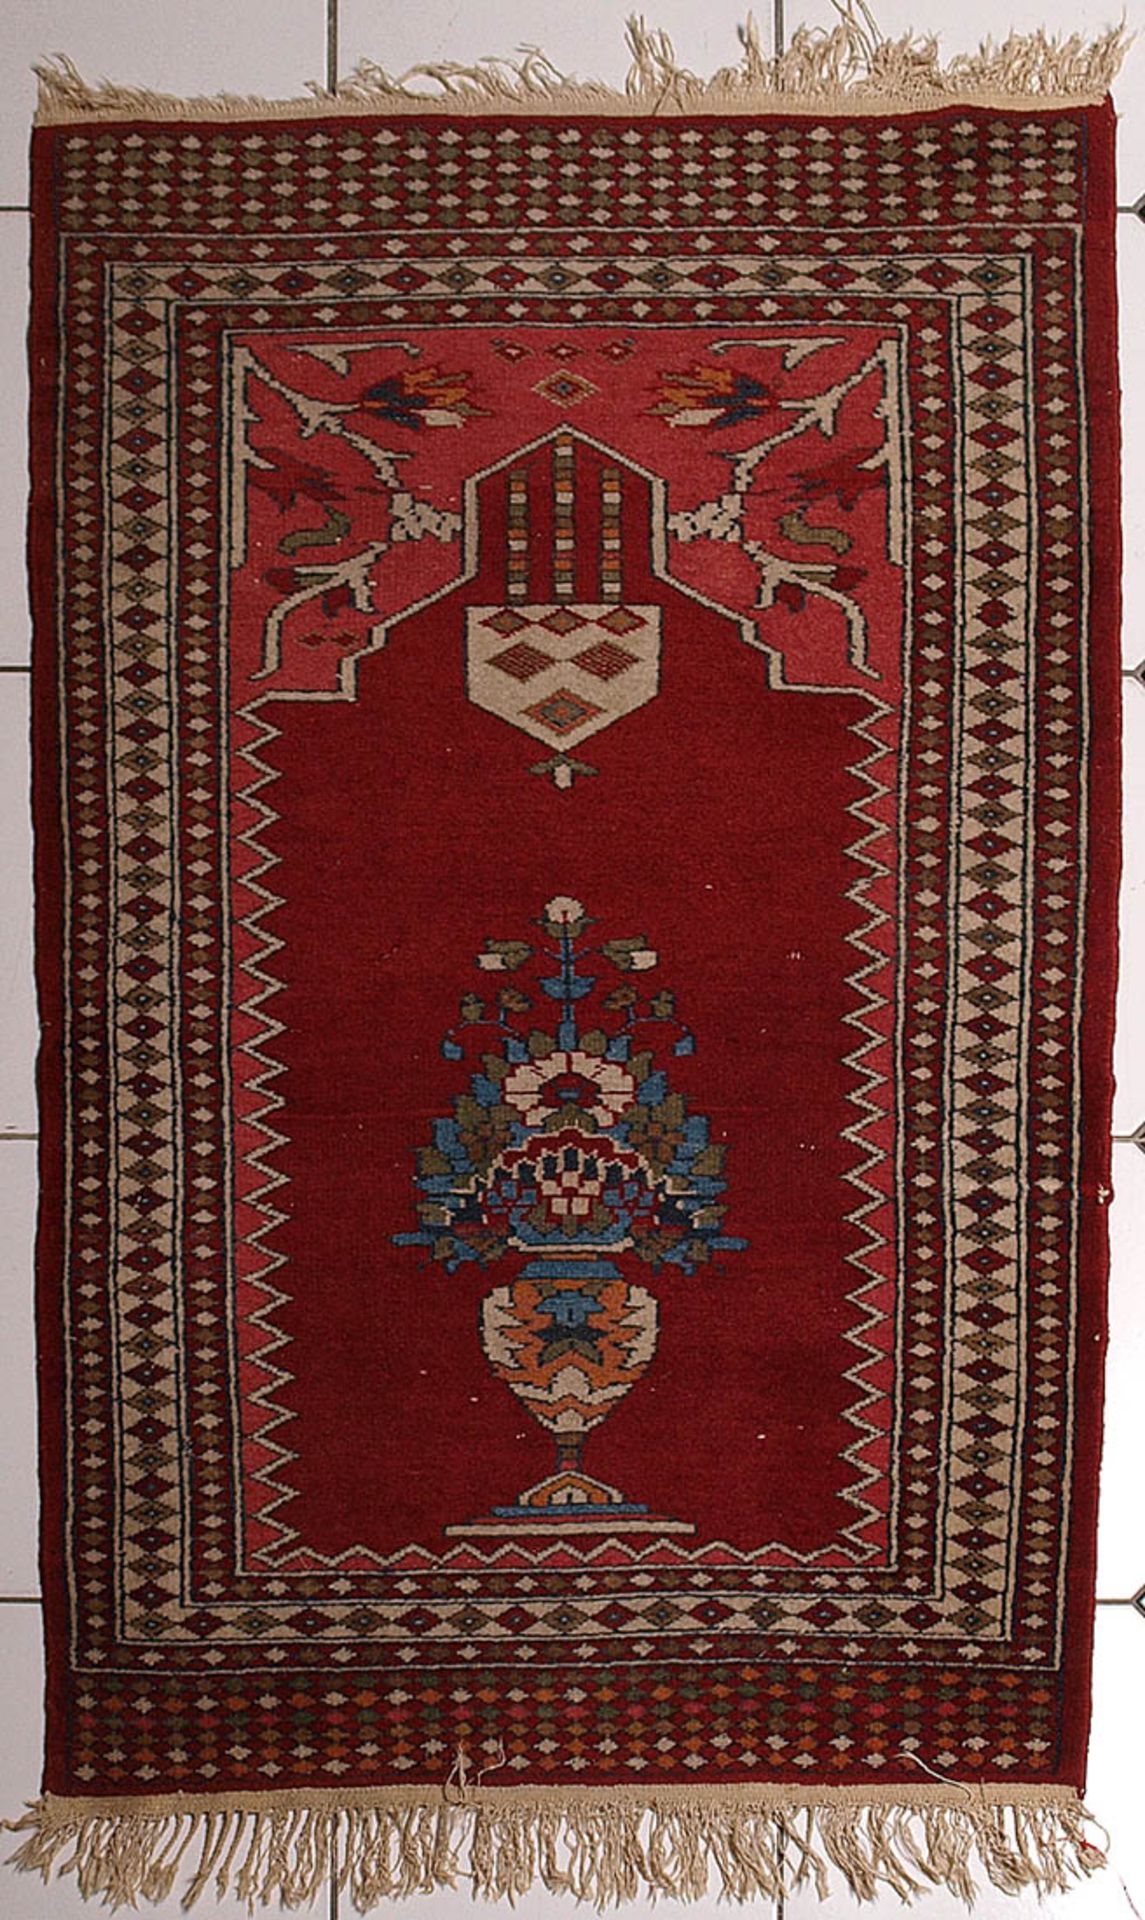 Gebetsteppich, türkischRotgrundiger Mihrab mit Ampel und Blütenstrauß in Vase. Eckzwickel mit